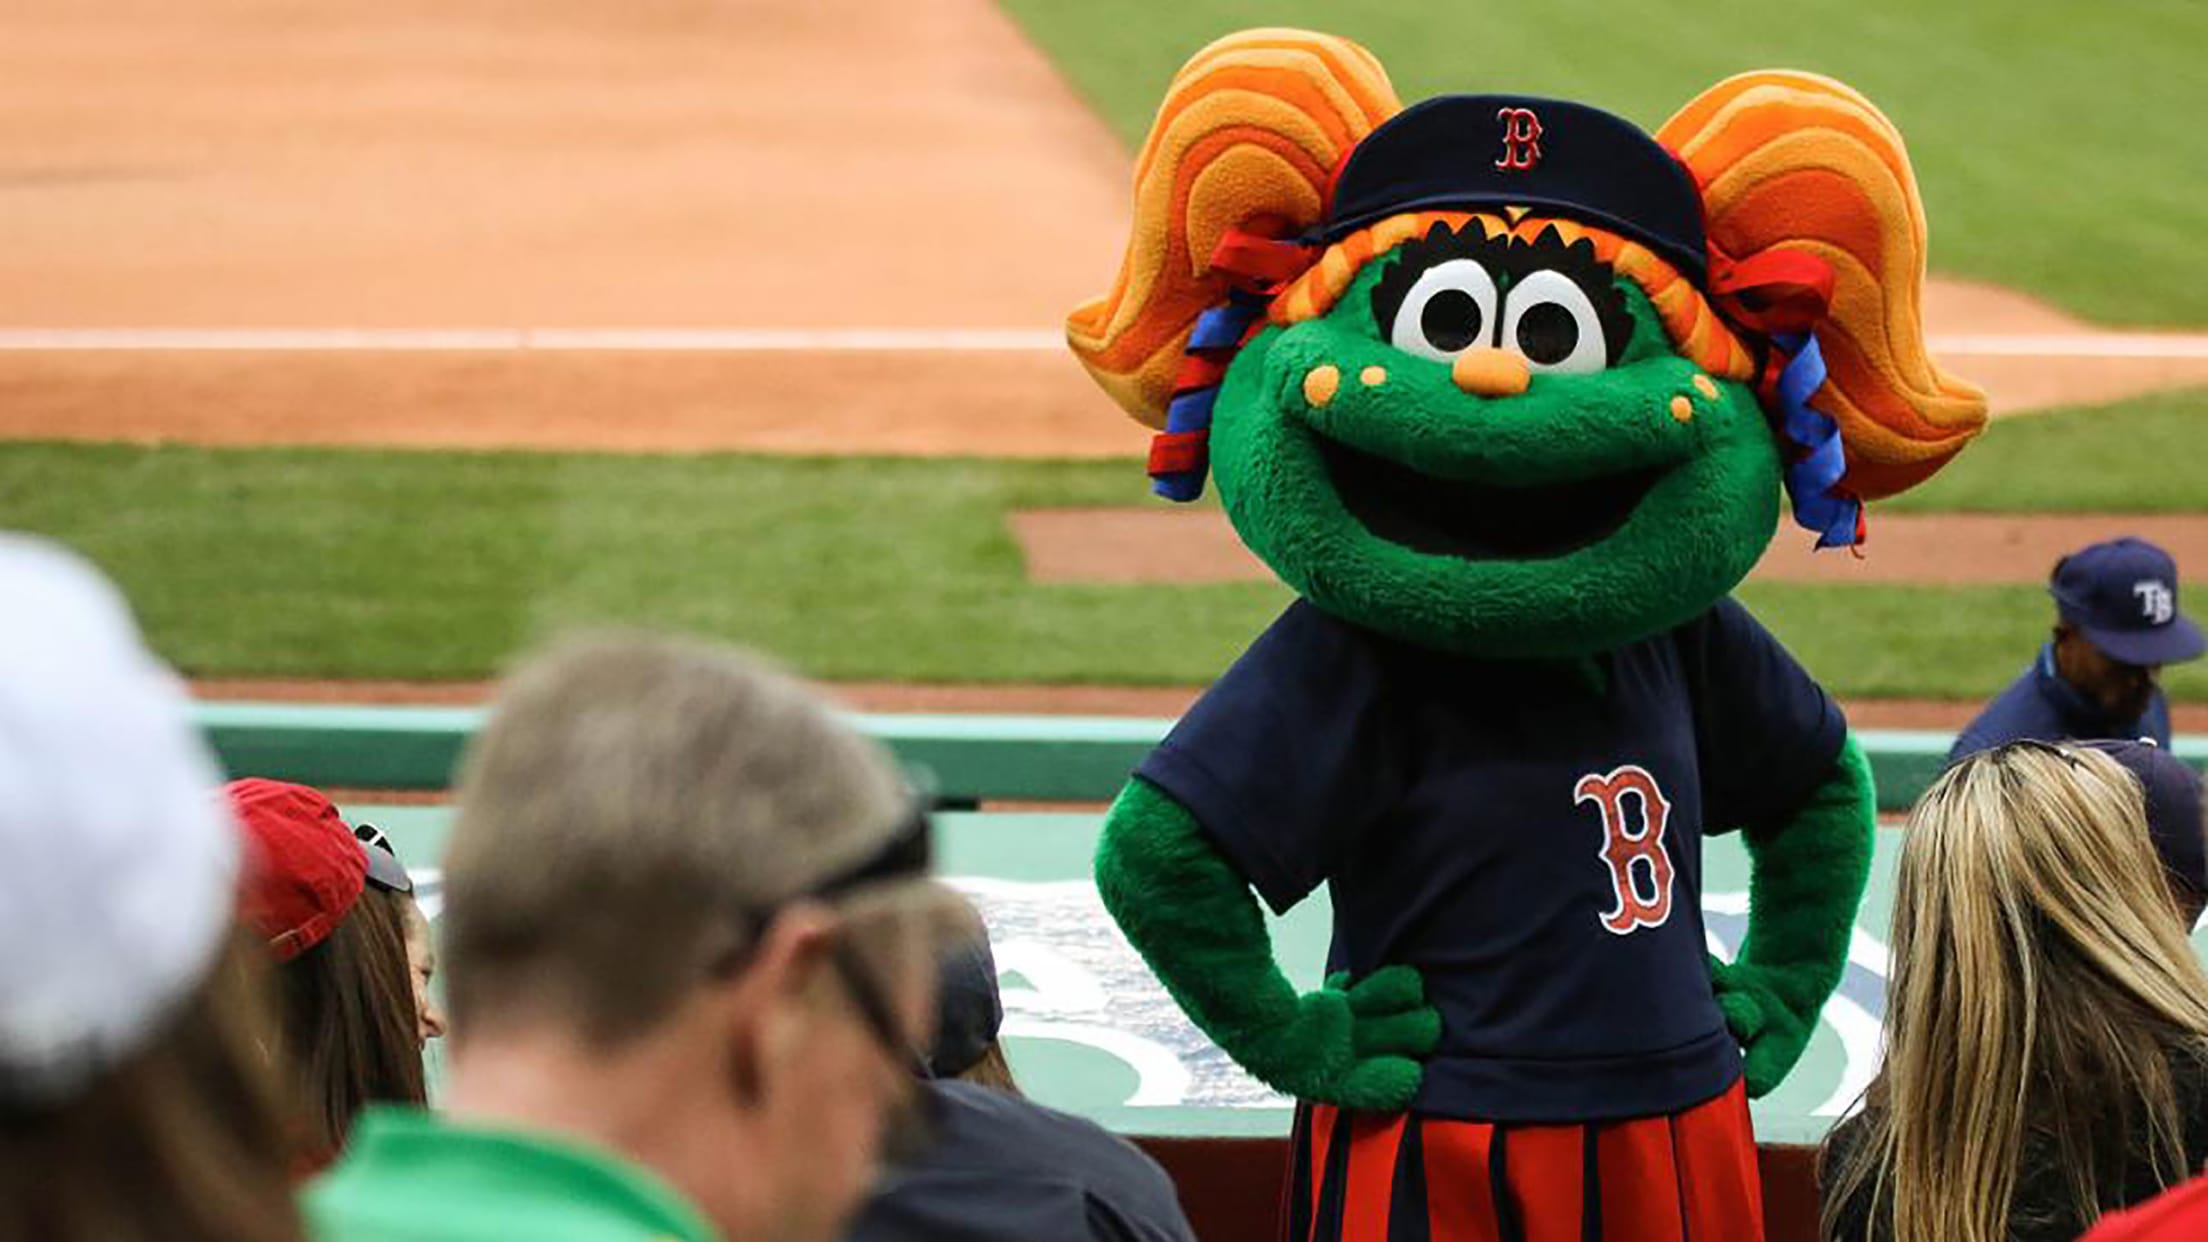 Boston Red Sox Mascot Wally The Green Monster Shirt - Shibtee Clothing